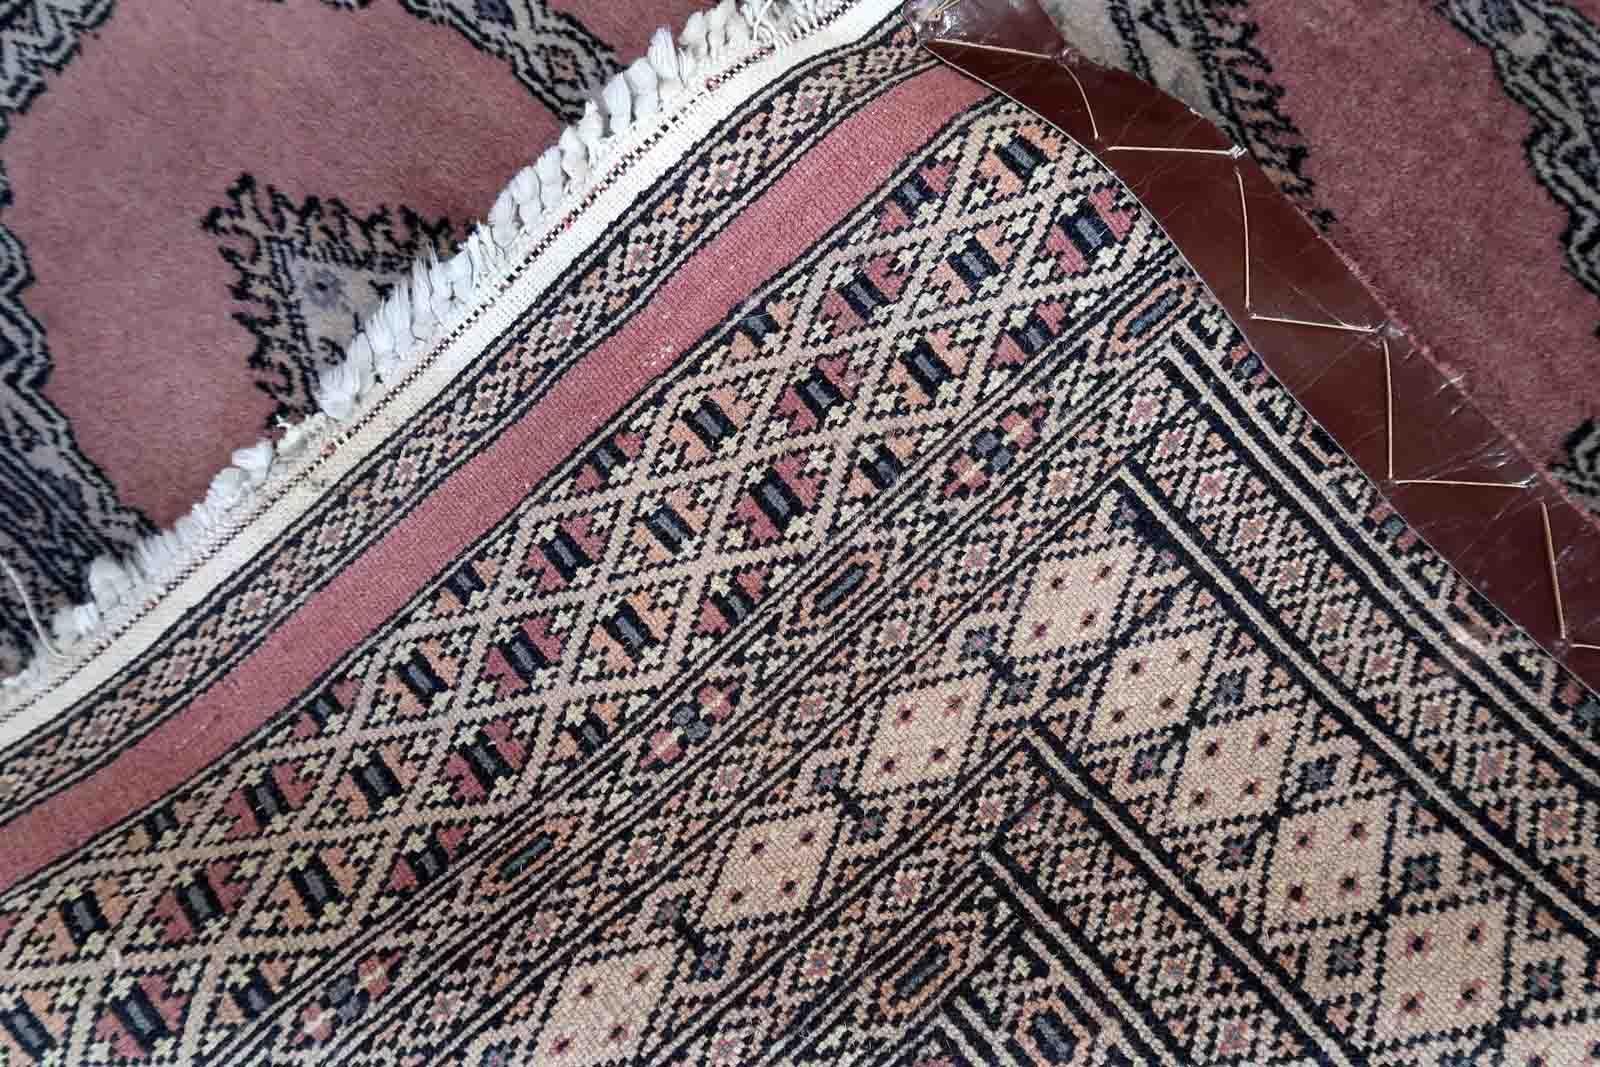 Handgefertigter usbekischer Buchara-Teppich in traditionellem Design und rosa Wolle. Der Teppich stammt aus dem Ende des 20. Jahrhunderts. Es befindet sich in einem guten Originalzustand.

-zustand: original gut, 

-etwa: 1970er